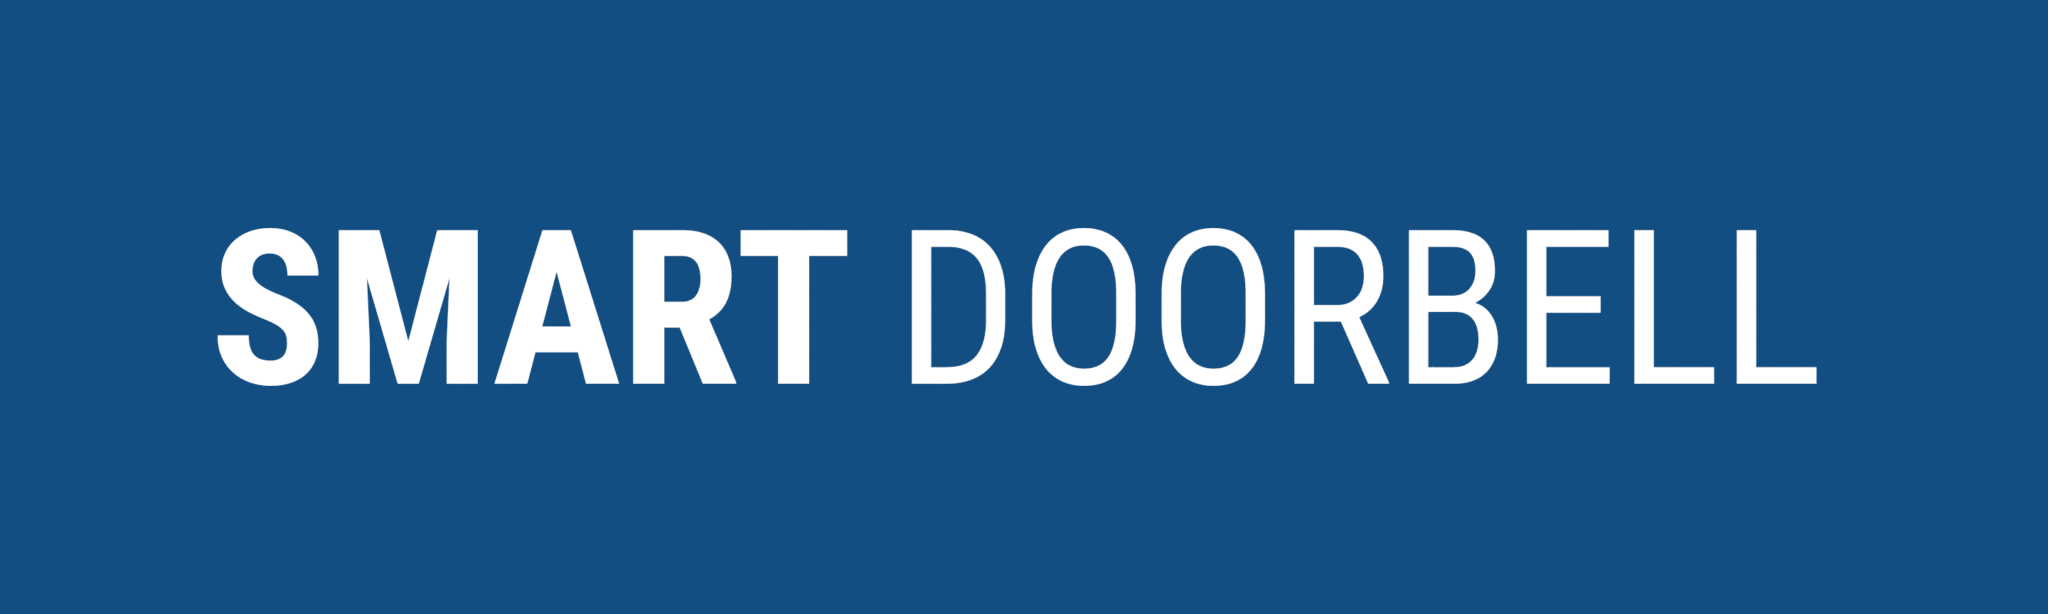 Smart Doorbell logo banner